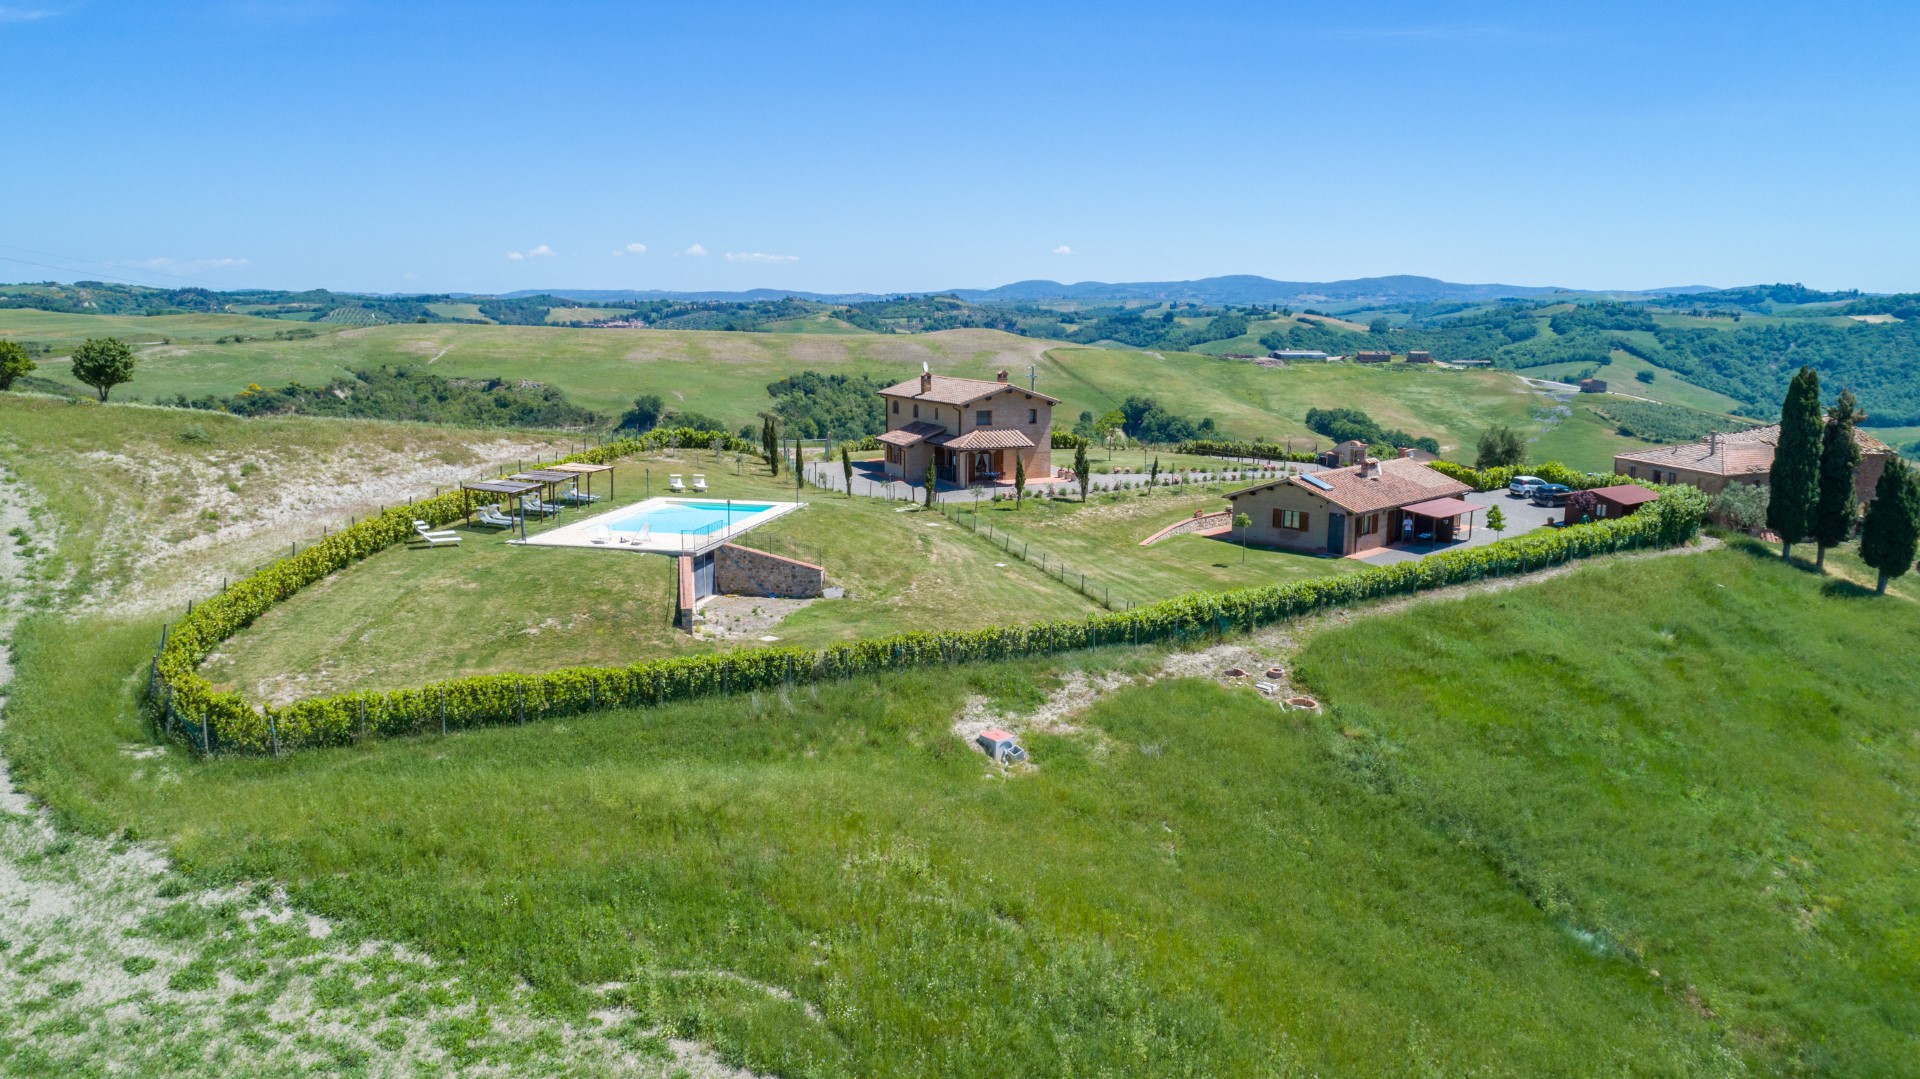 330_185bd25_Agriturismo, vakantiehuis met zwembad, kleinschalig, Toscane, Buonconvento, Siena, Podere Torricella, Italie (19)